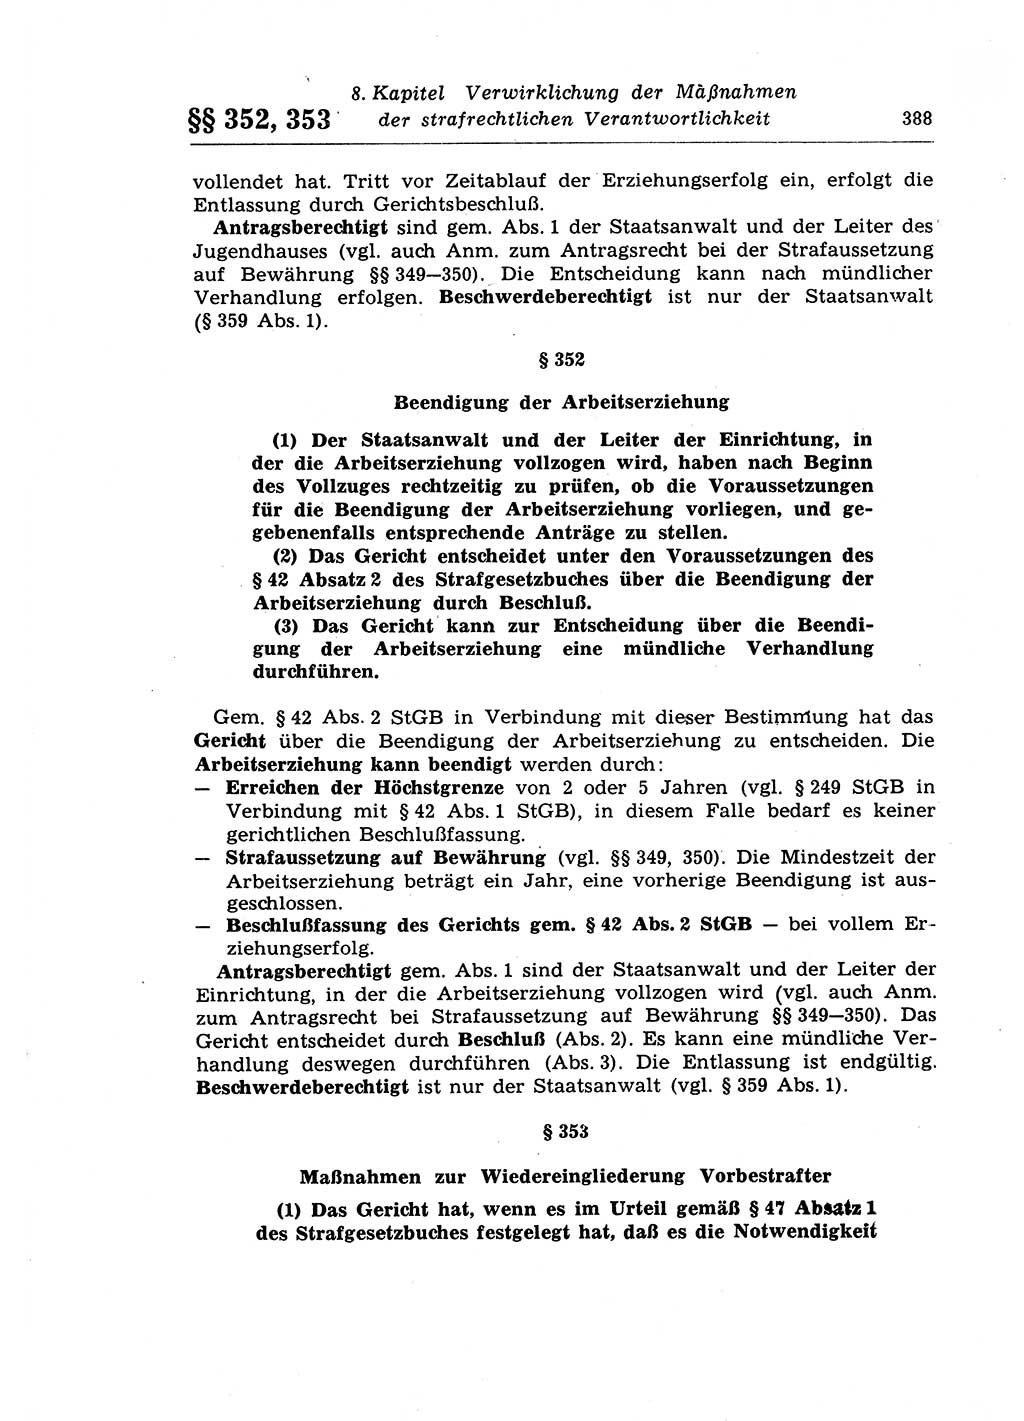 Strafprozeßrecht der DDR (Deutsche Demokratische Republik), Lehrkommentar zur Strafprozeßordnung (StPO) 1968, Seite 388 (Strafprozeßr. DDR Lehrkomm. StPO 19688, S. 388)